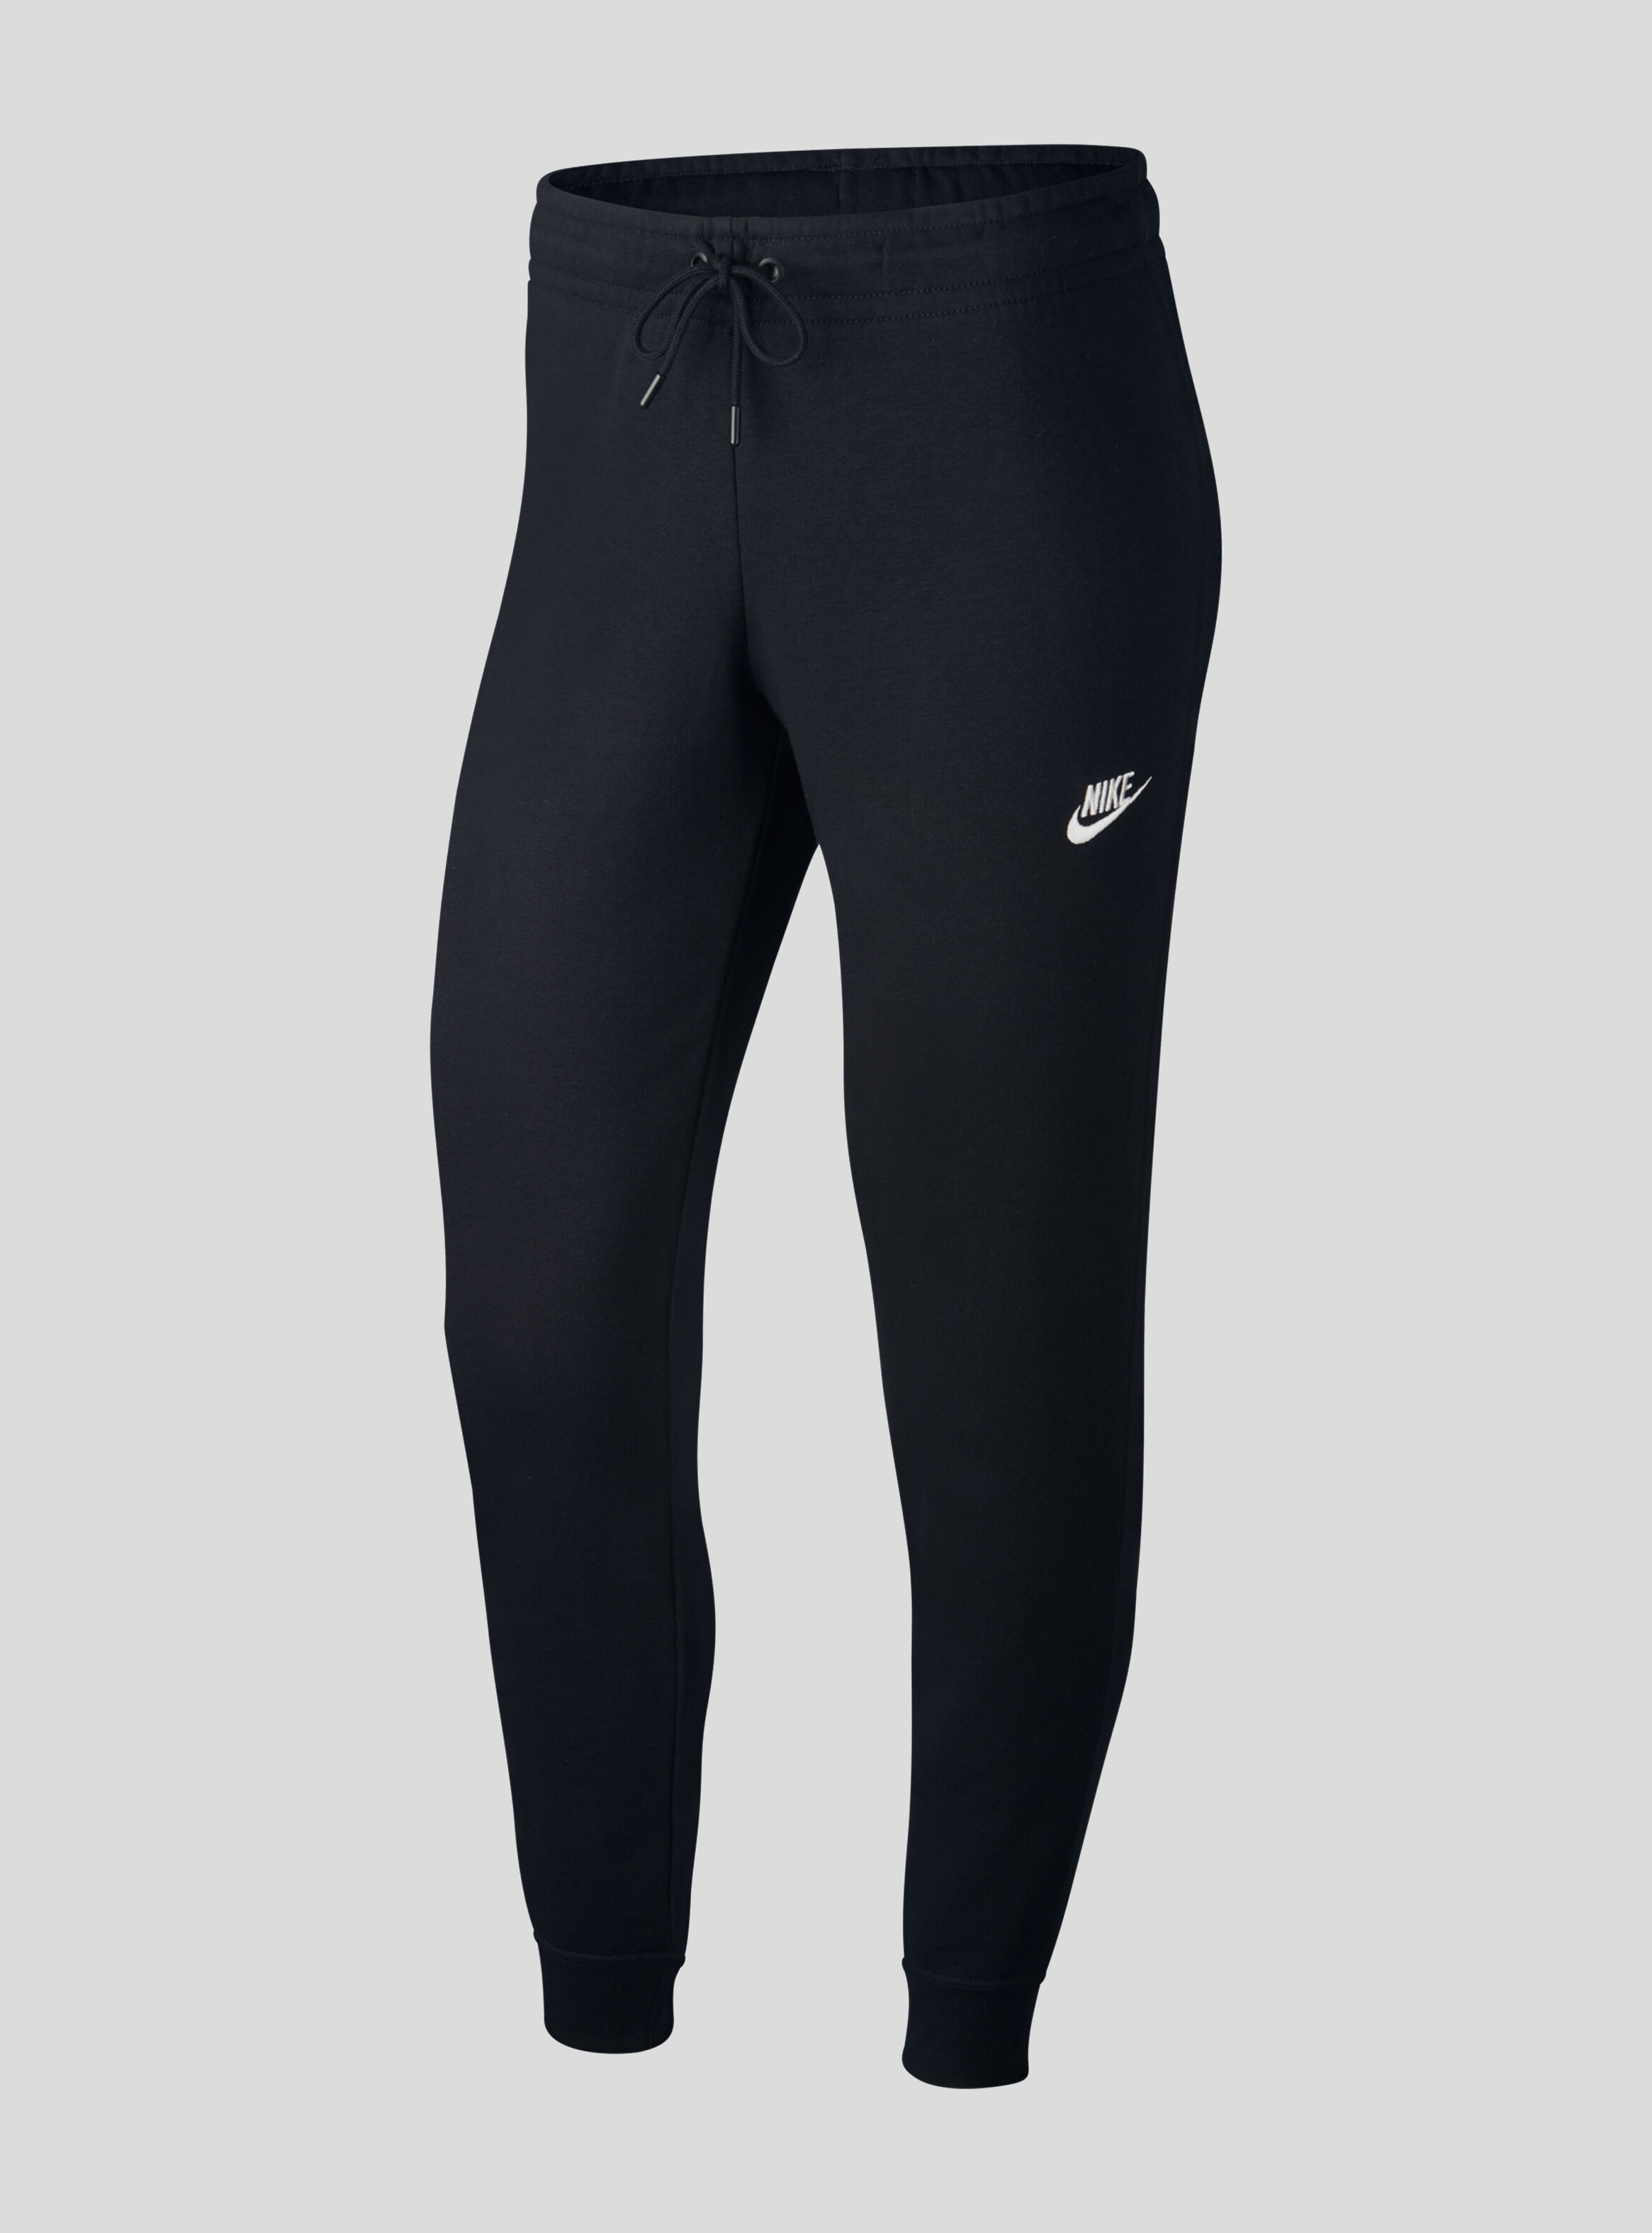 Pantalón Nike W NSW Essentials Tight Fleece Mujer Negro - Calzas y  Pantalones | Paris.cl